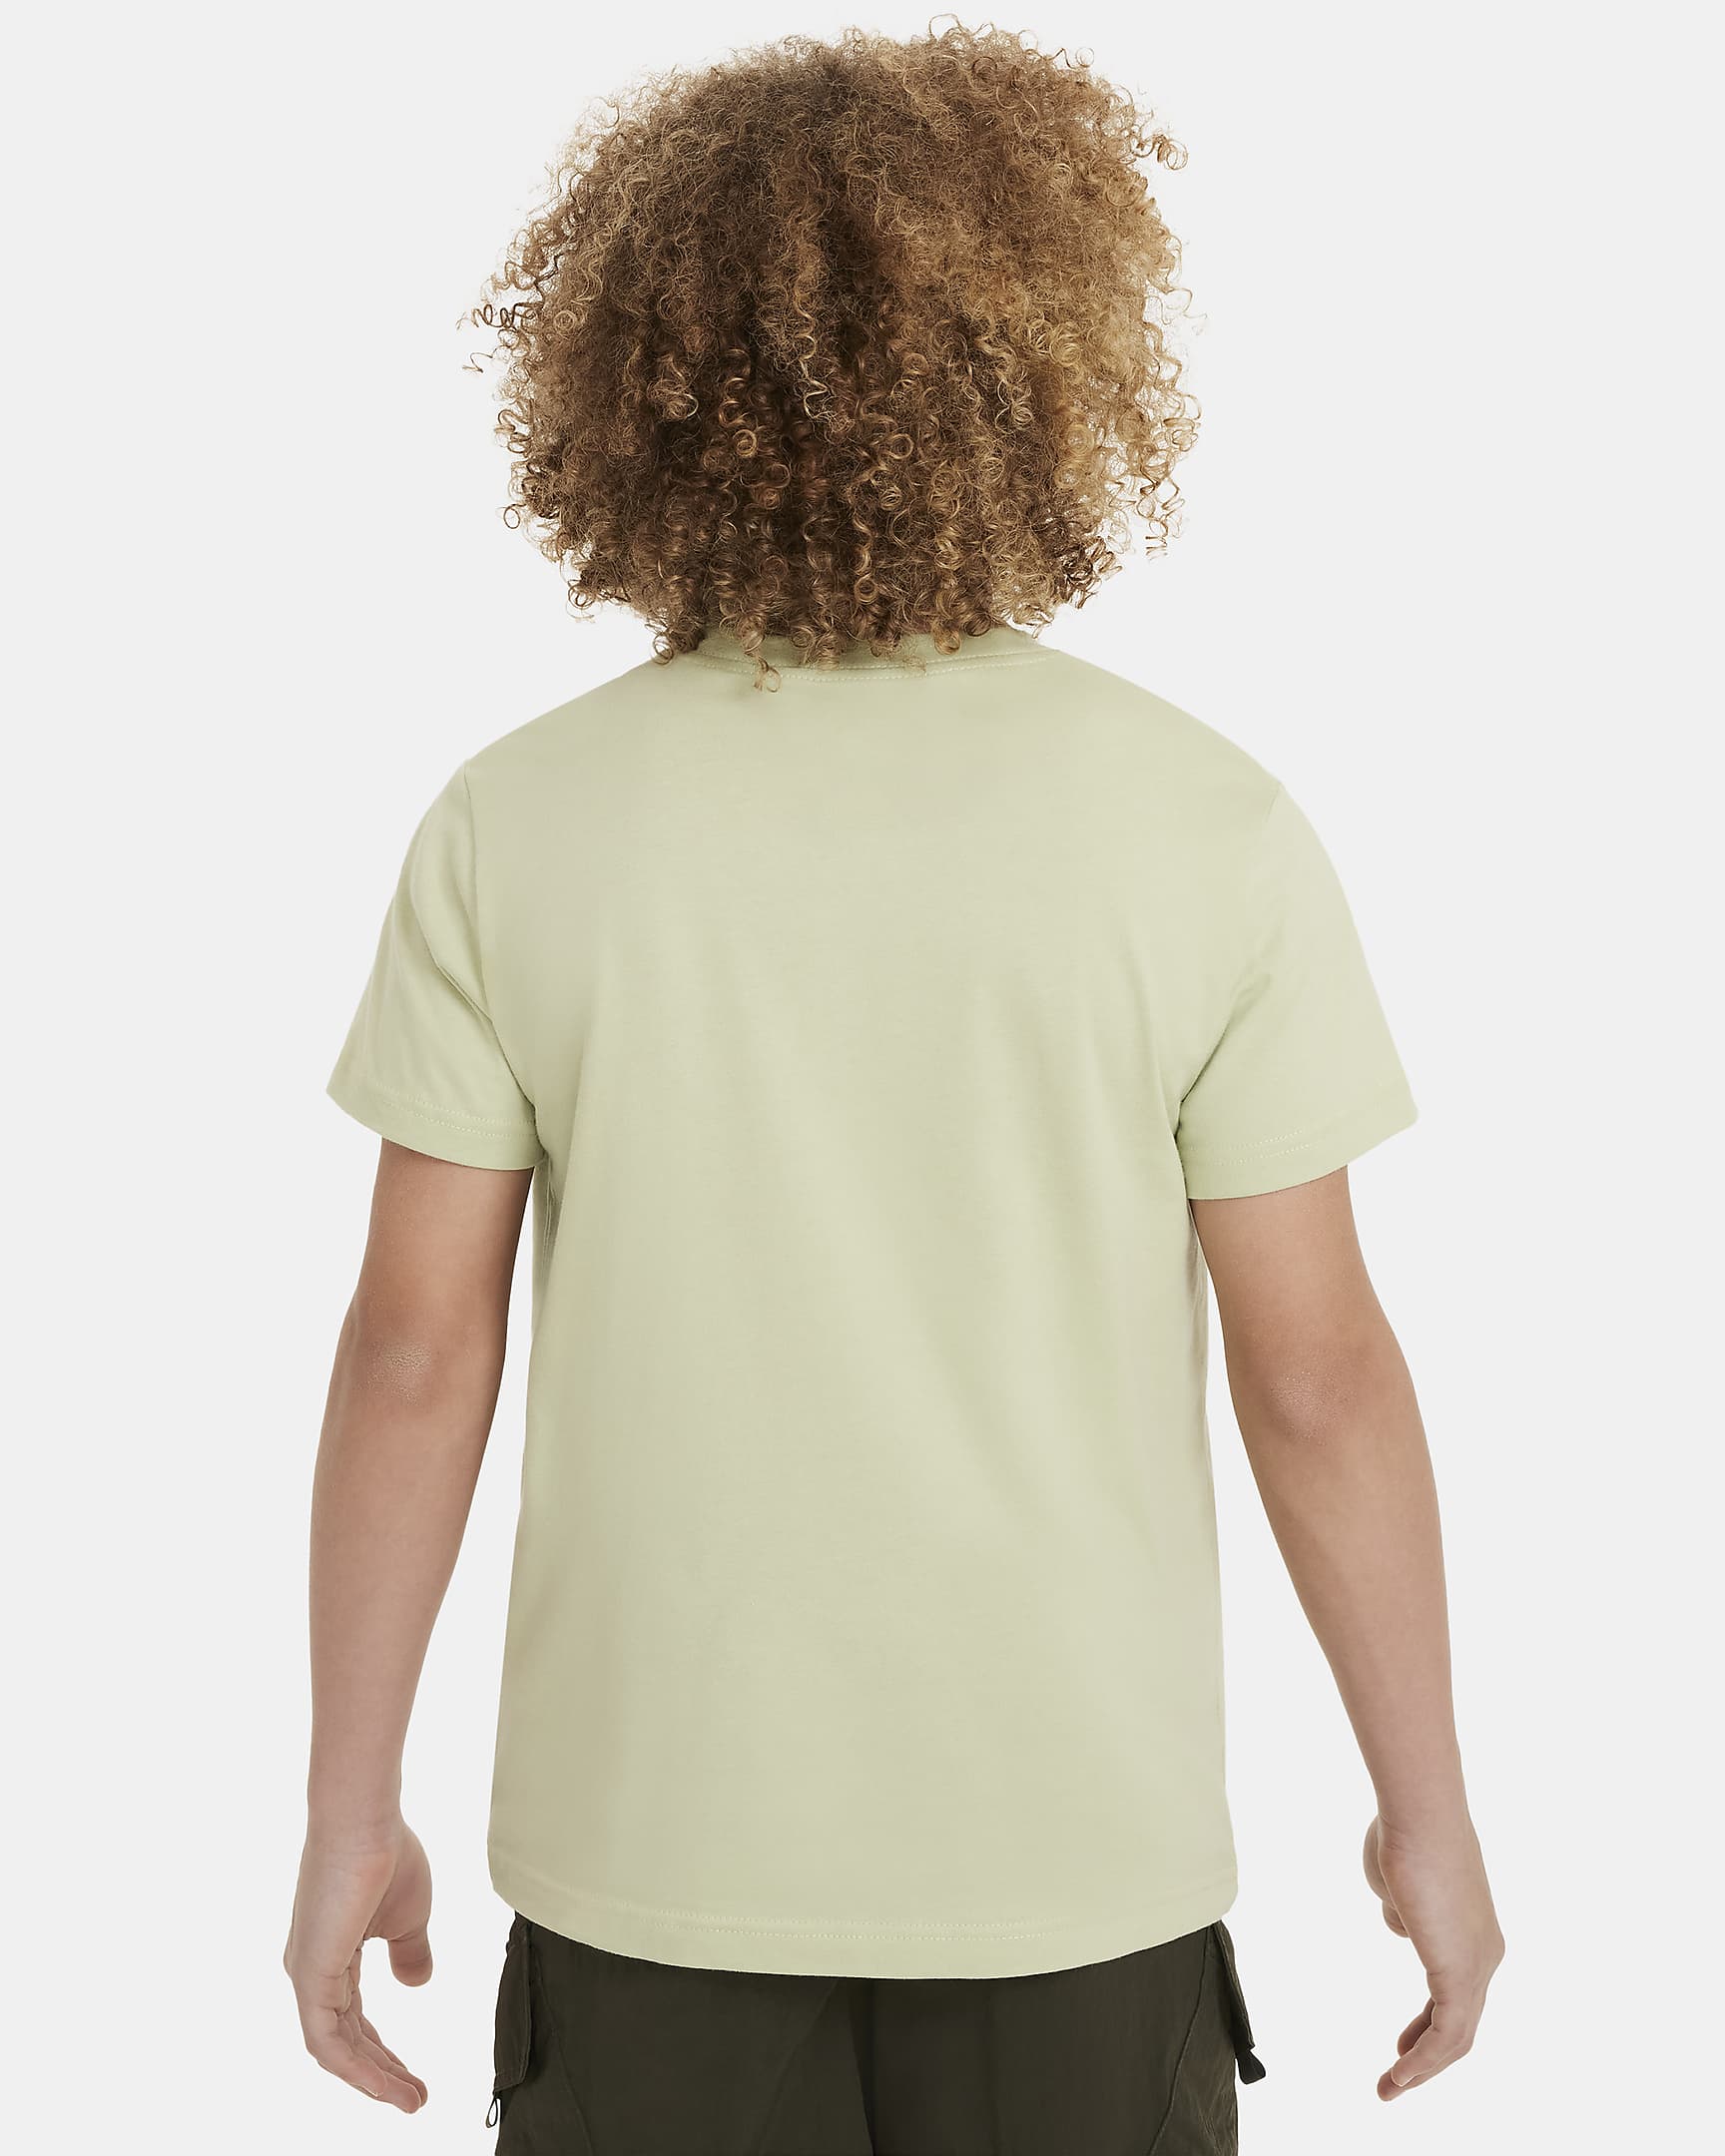 Nike Sportswear T-Shirt für ältere Kinder (Mädchen) - Olive Aura/Cargo Khaki/Weiß